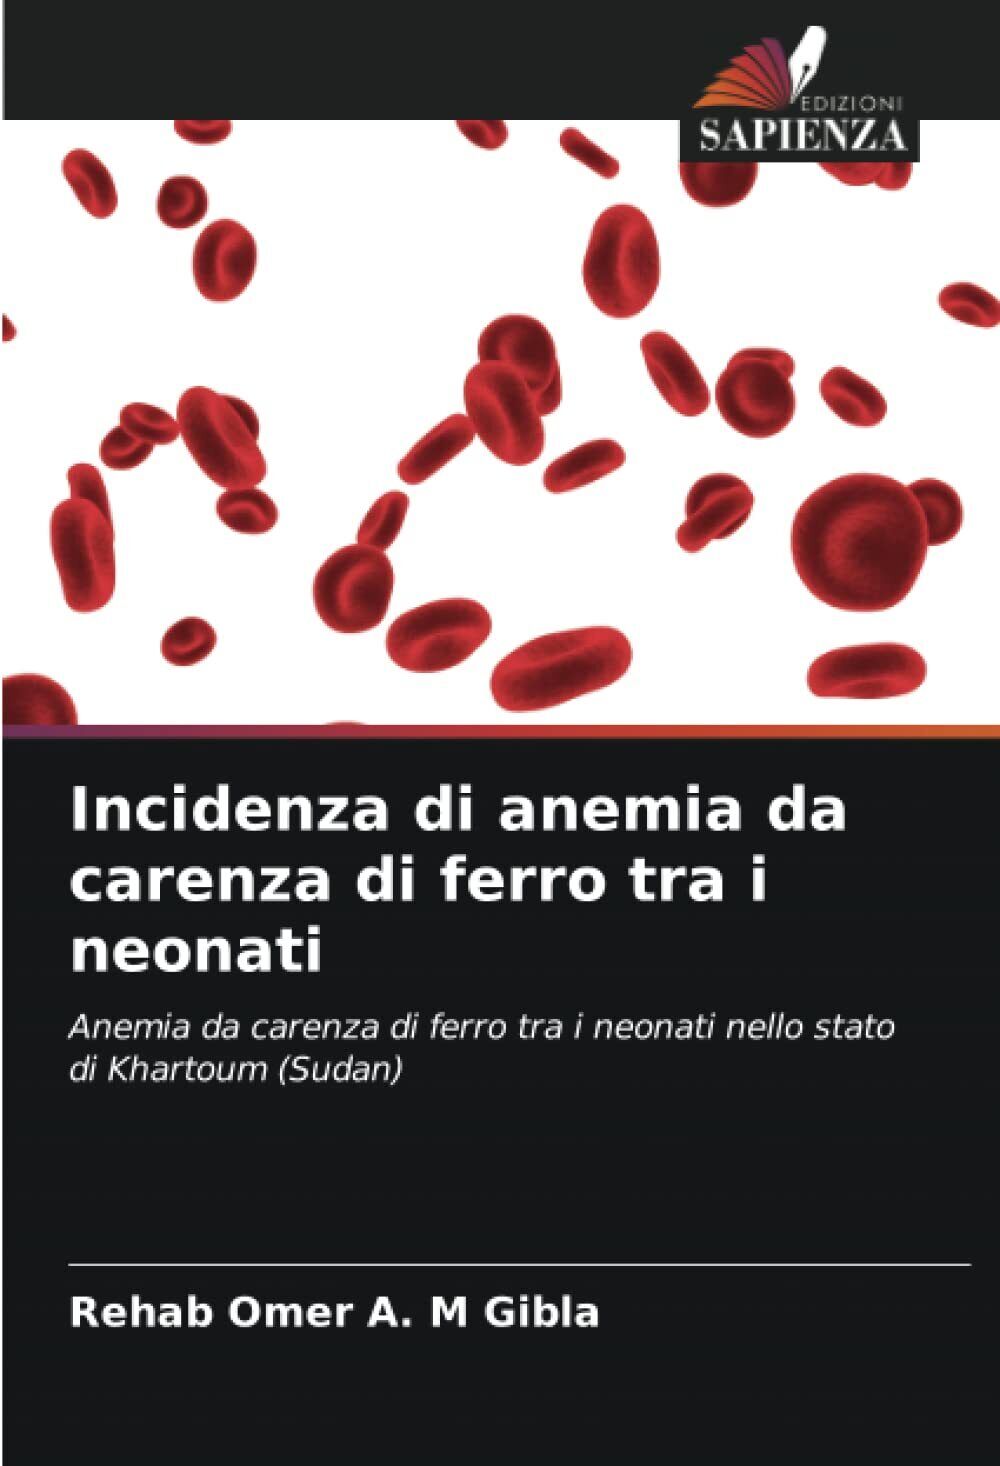 Incidenza di anemia da carenza di ferro tra i neonati - sapienza, 2022